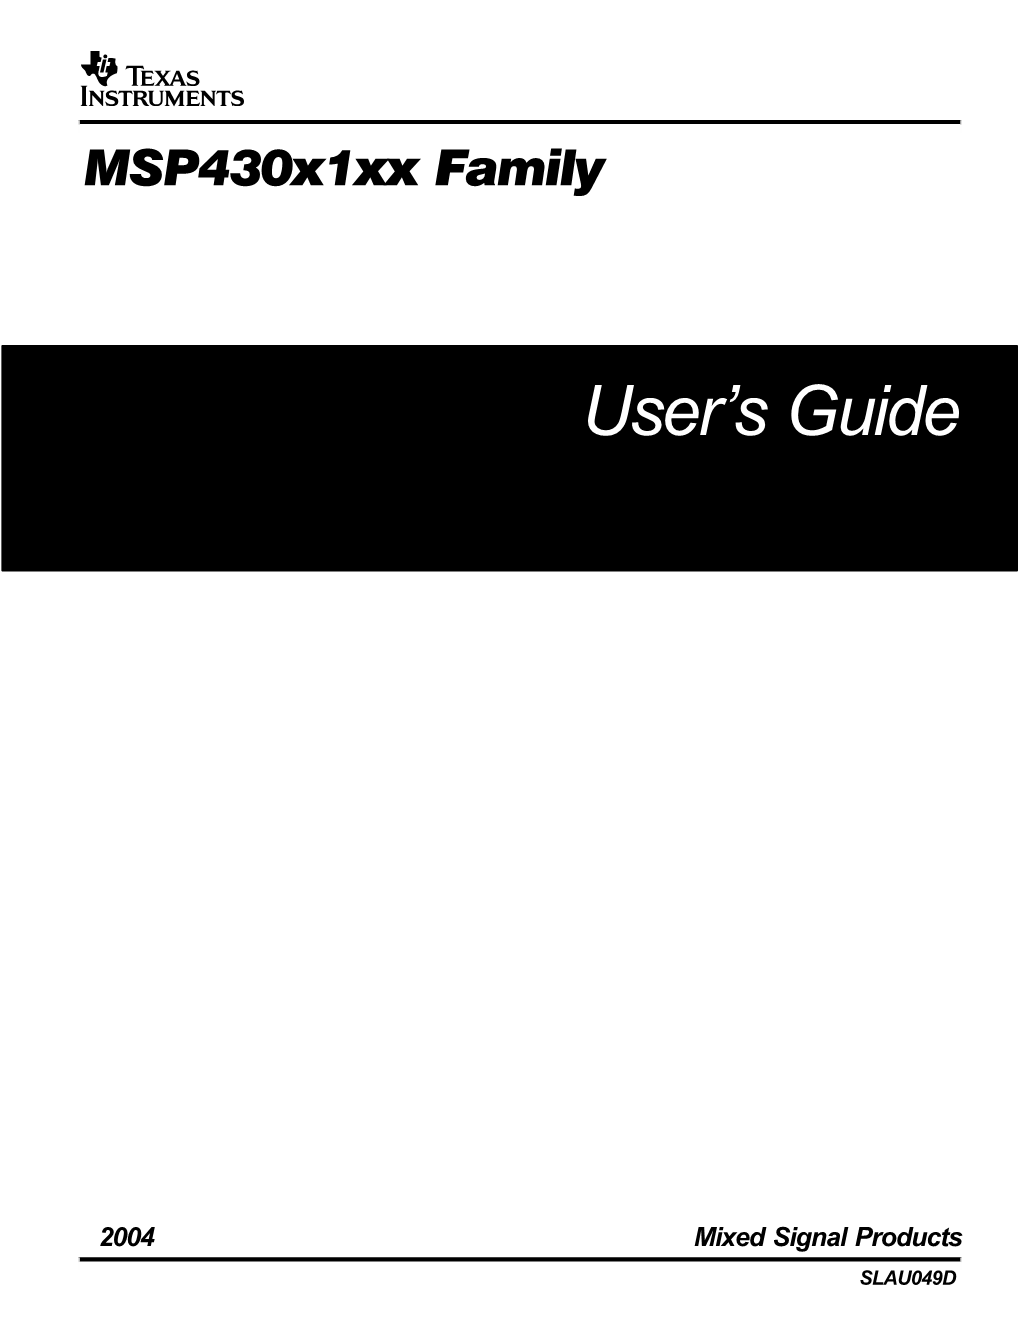 Msp430x1xx Family User's Guide (Rev. D)